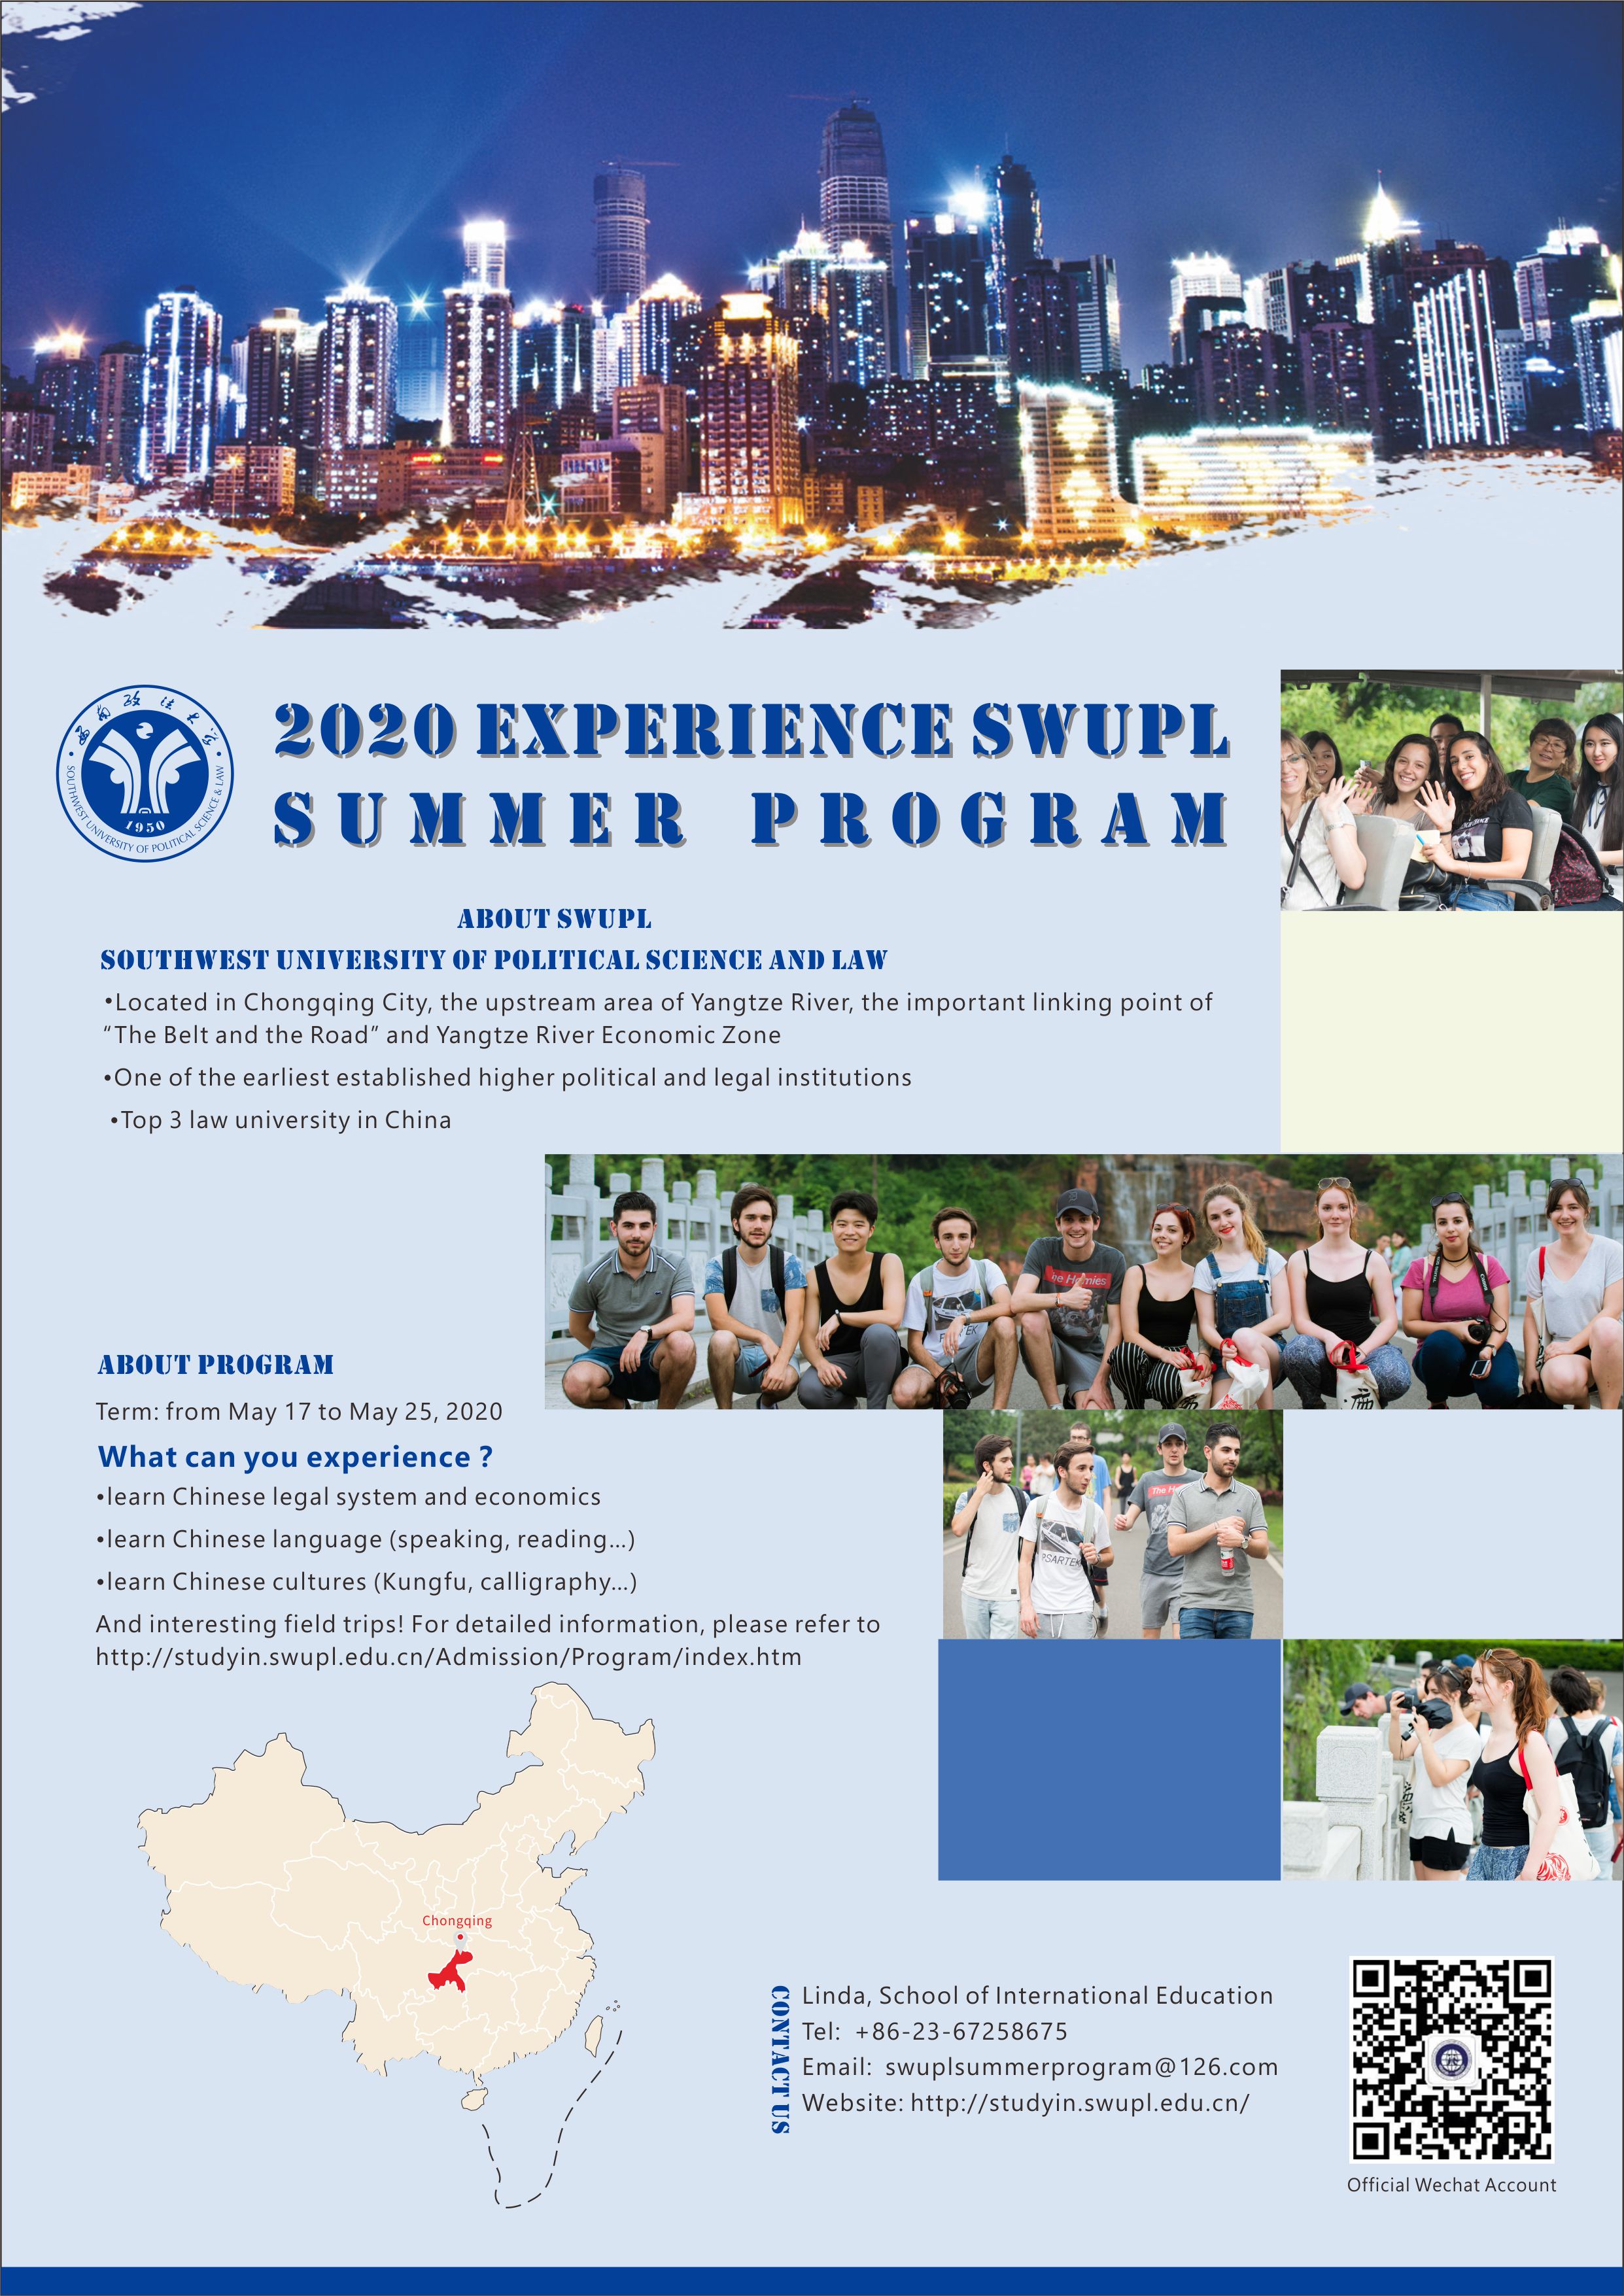 รับสมัครนักศึกษาเข้าร่วมโครงการ “2020 EXPERIENCE SWUPL SUMMER PROGRAM